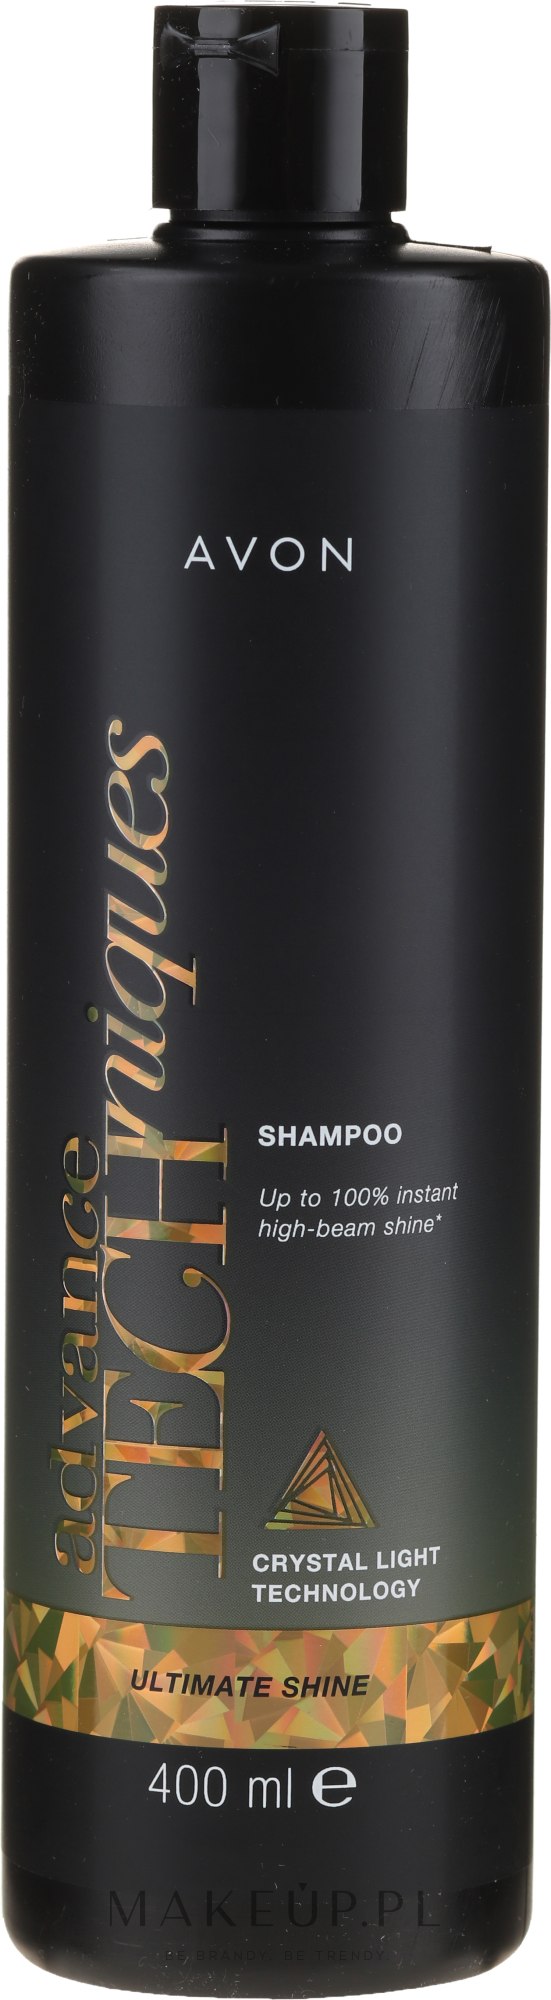 avon techniques szampon